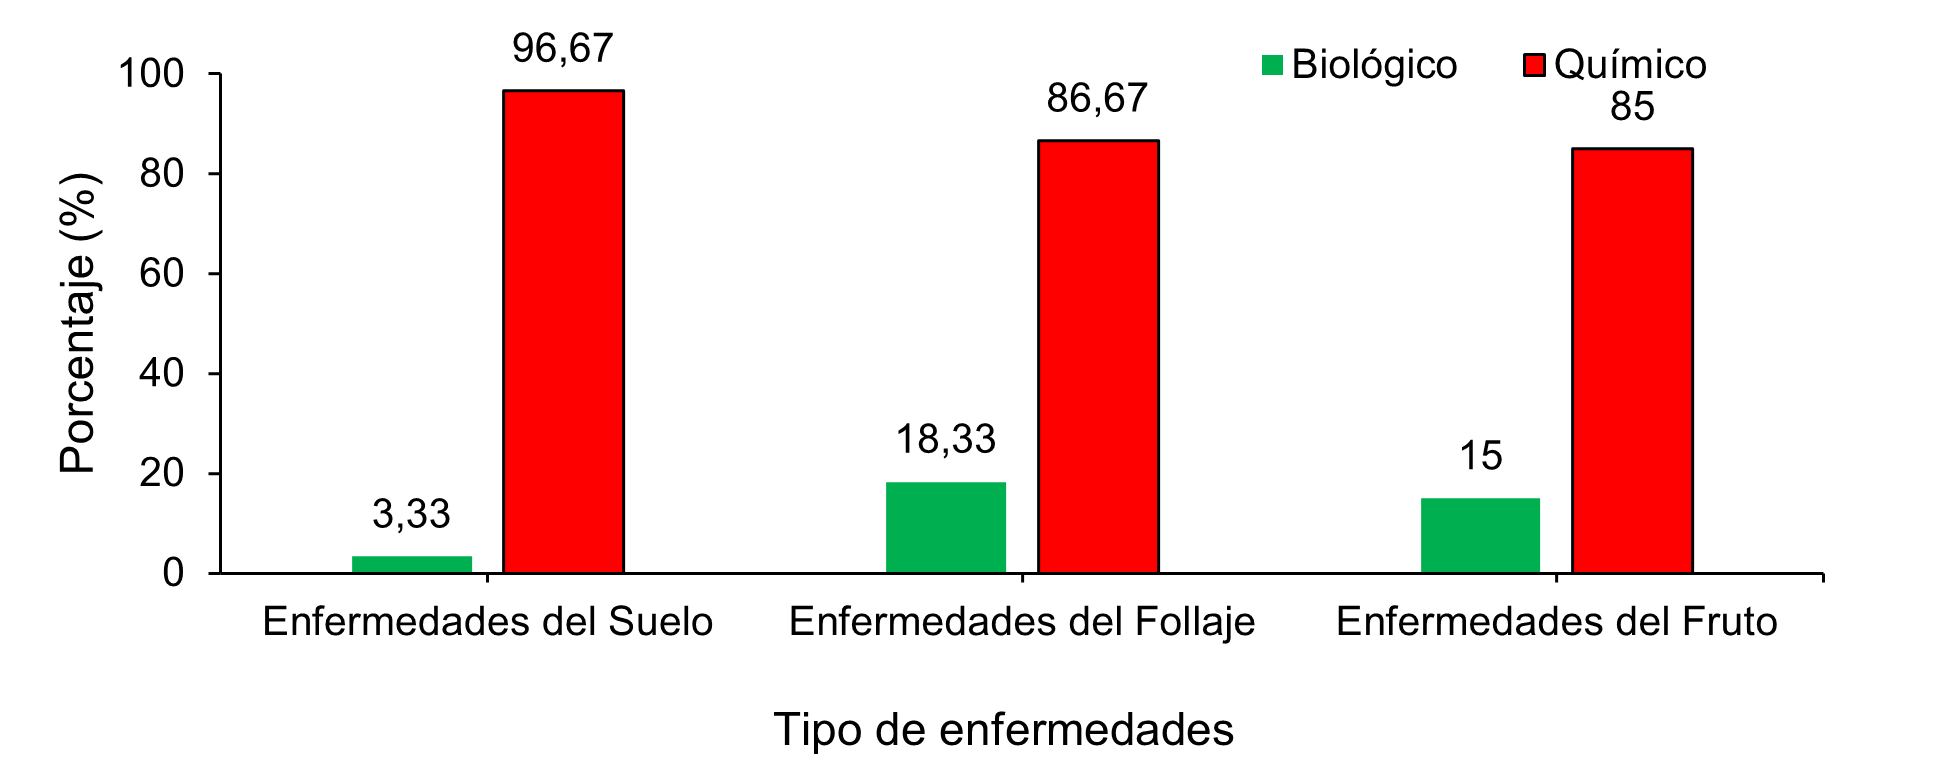 Tipos de tratamientos empleados en el manejo de las enfermedades en el cultivo de repollo en cuatro cooperativas rurales en Jinotega, Nicaragua